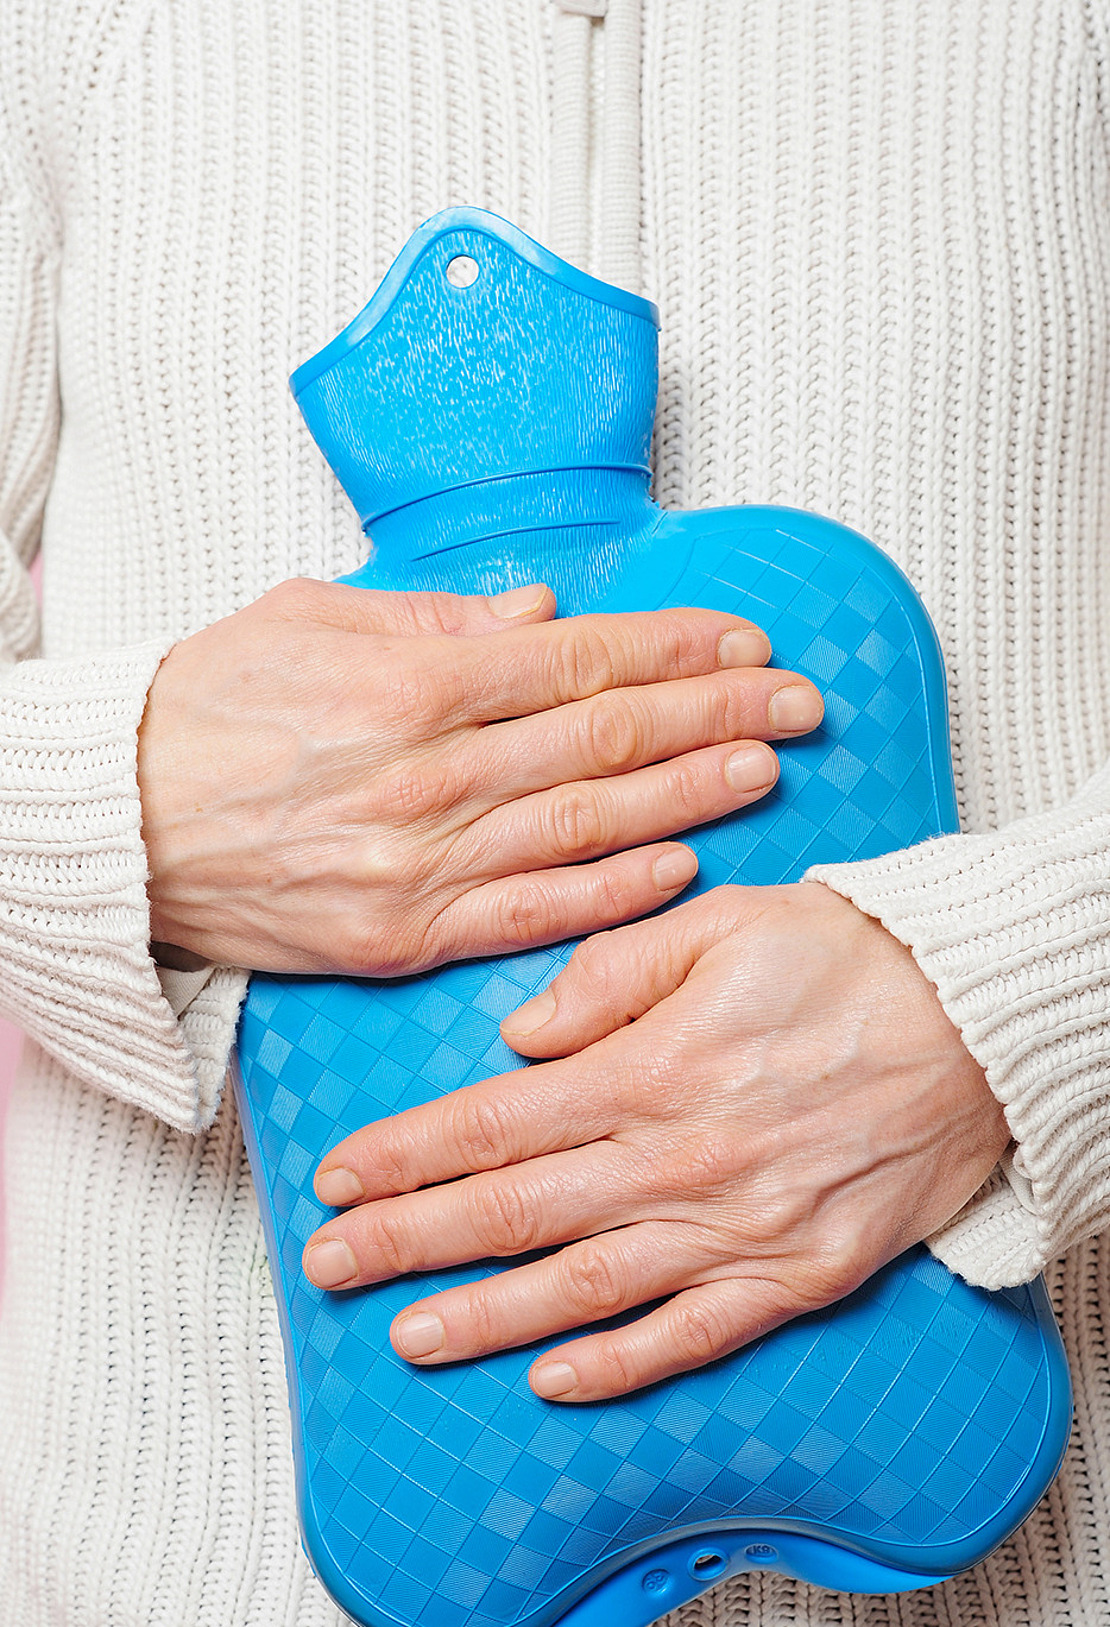 Eine Frau hält eine Wärmflasche an ihren Unterleib. Der Artikel behandelt das Thema Endometriose, das oft der Grund für starke Regelschmerzen ist.